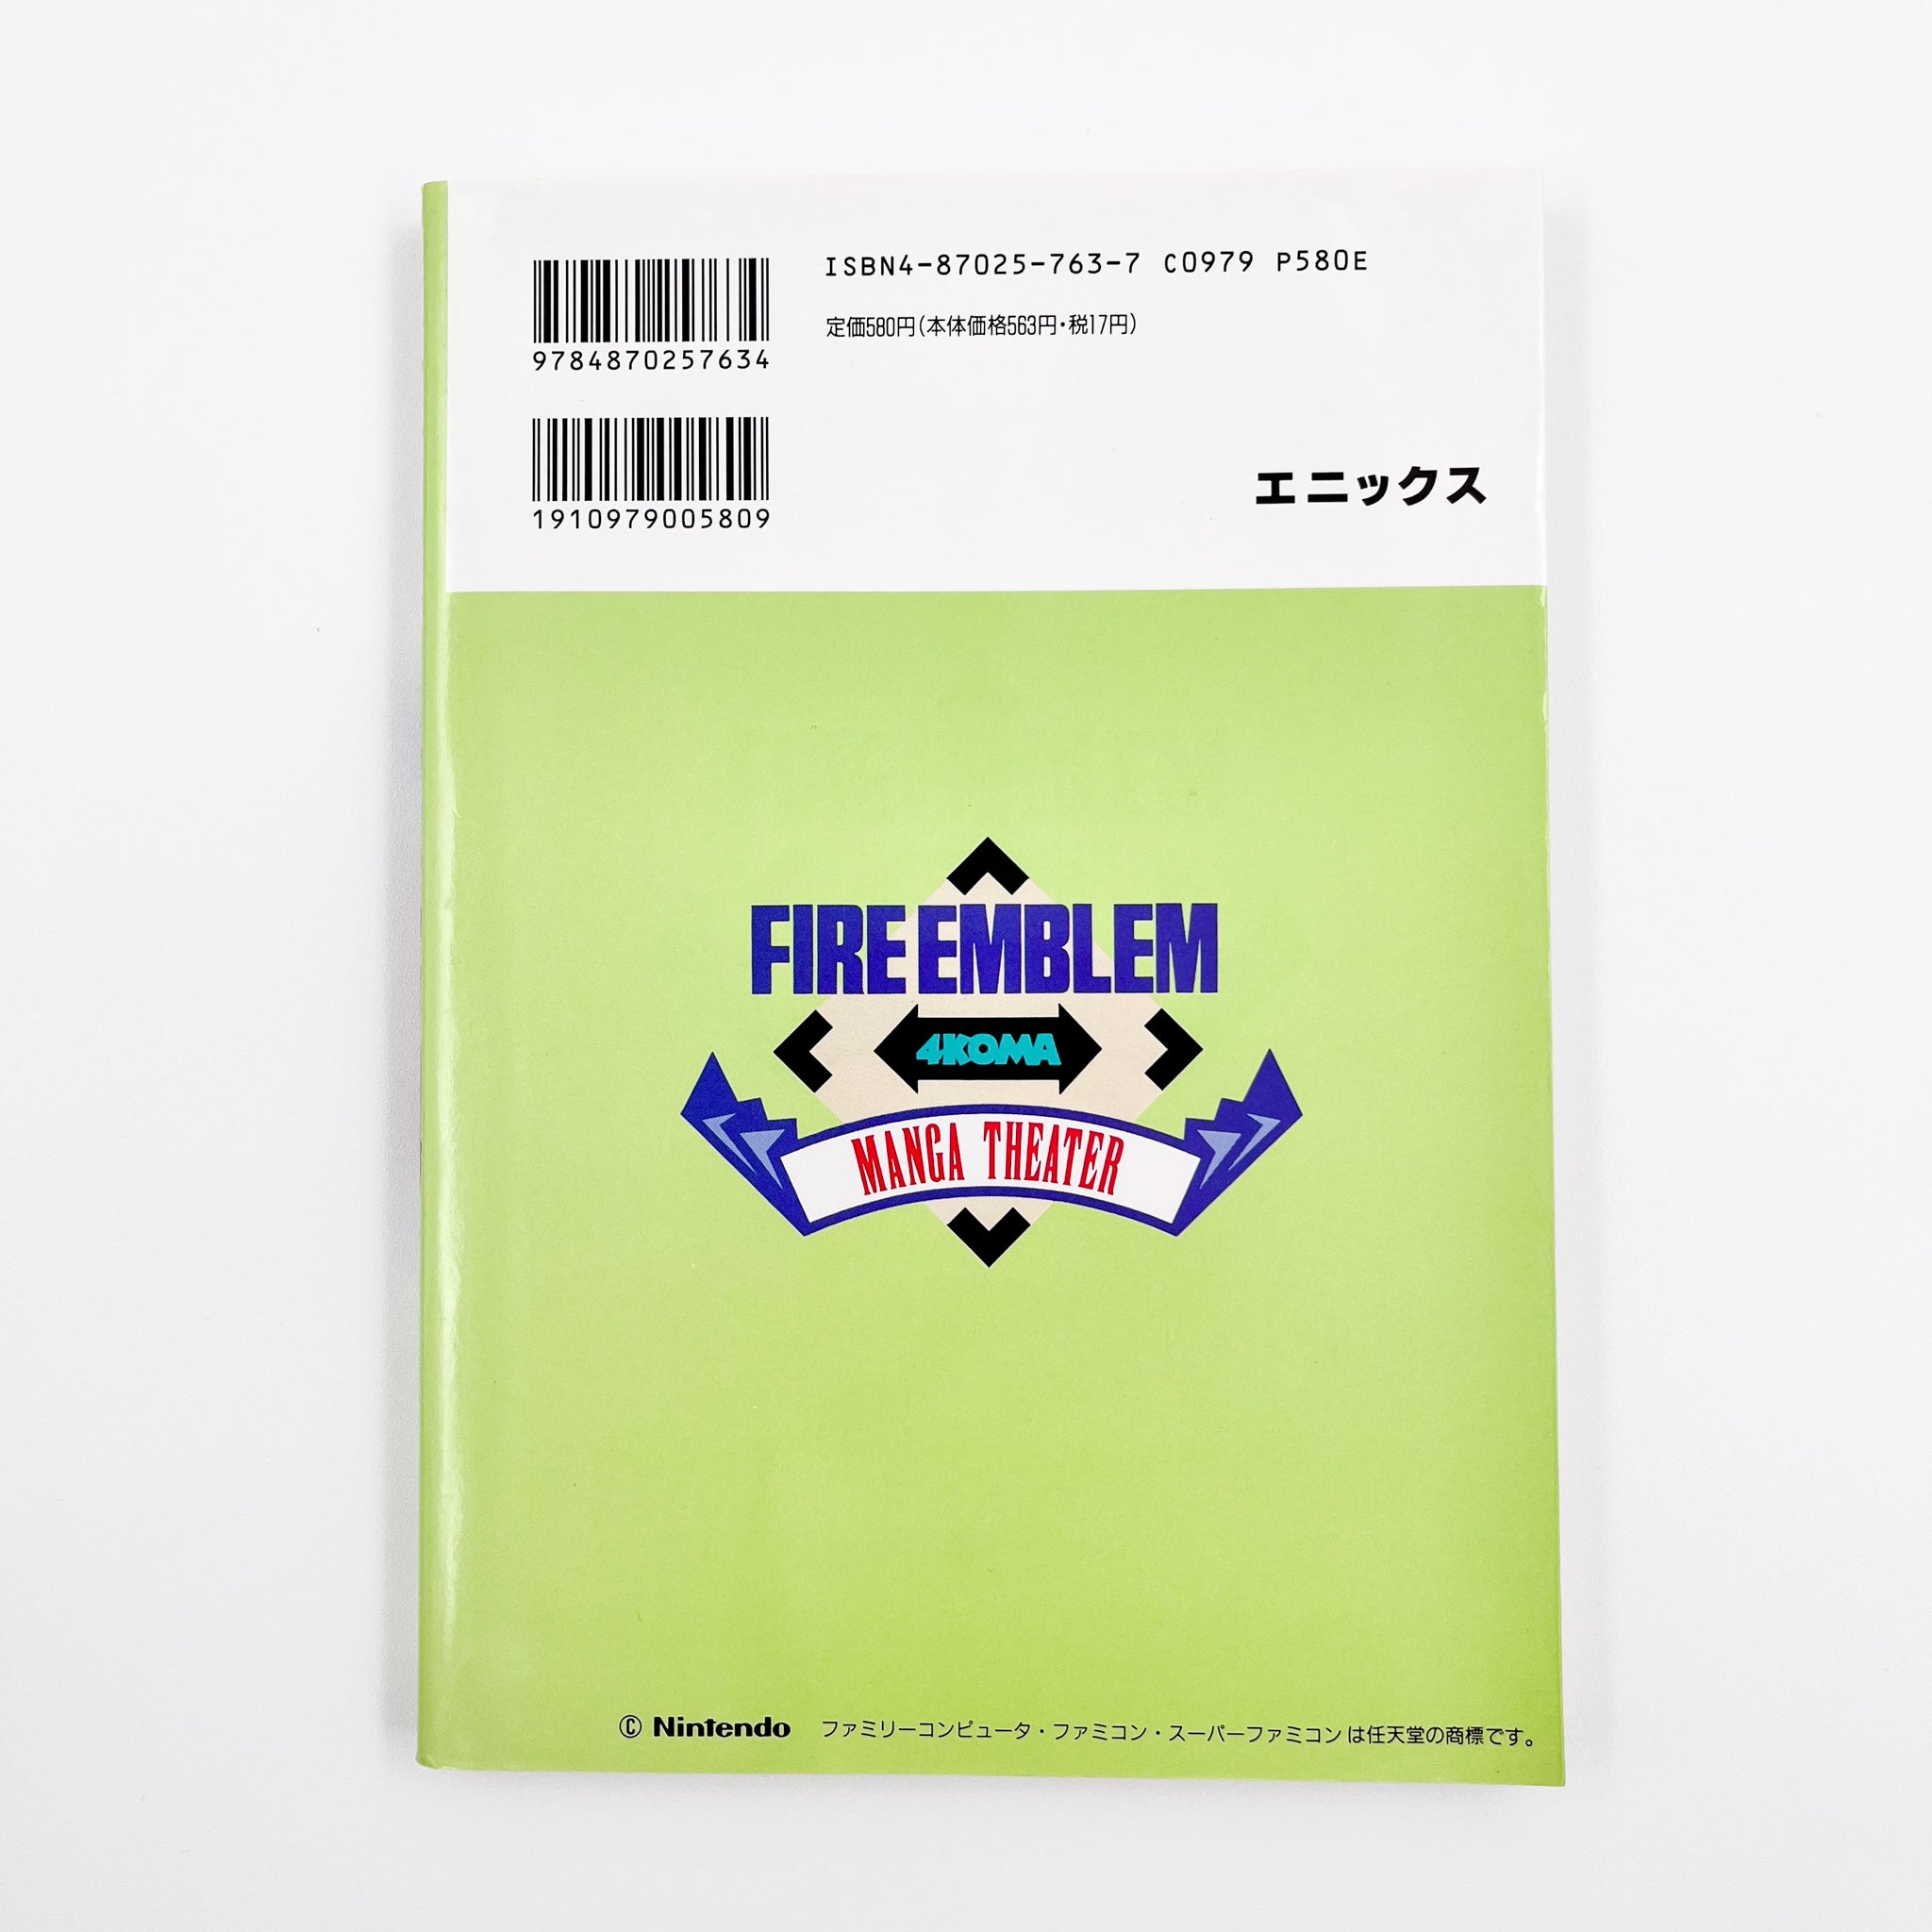 Fire Emblem 4koma Manga Theater Volume 2 Back Cover